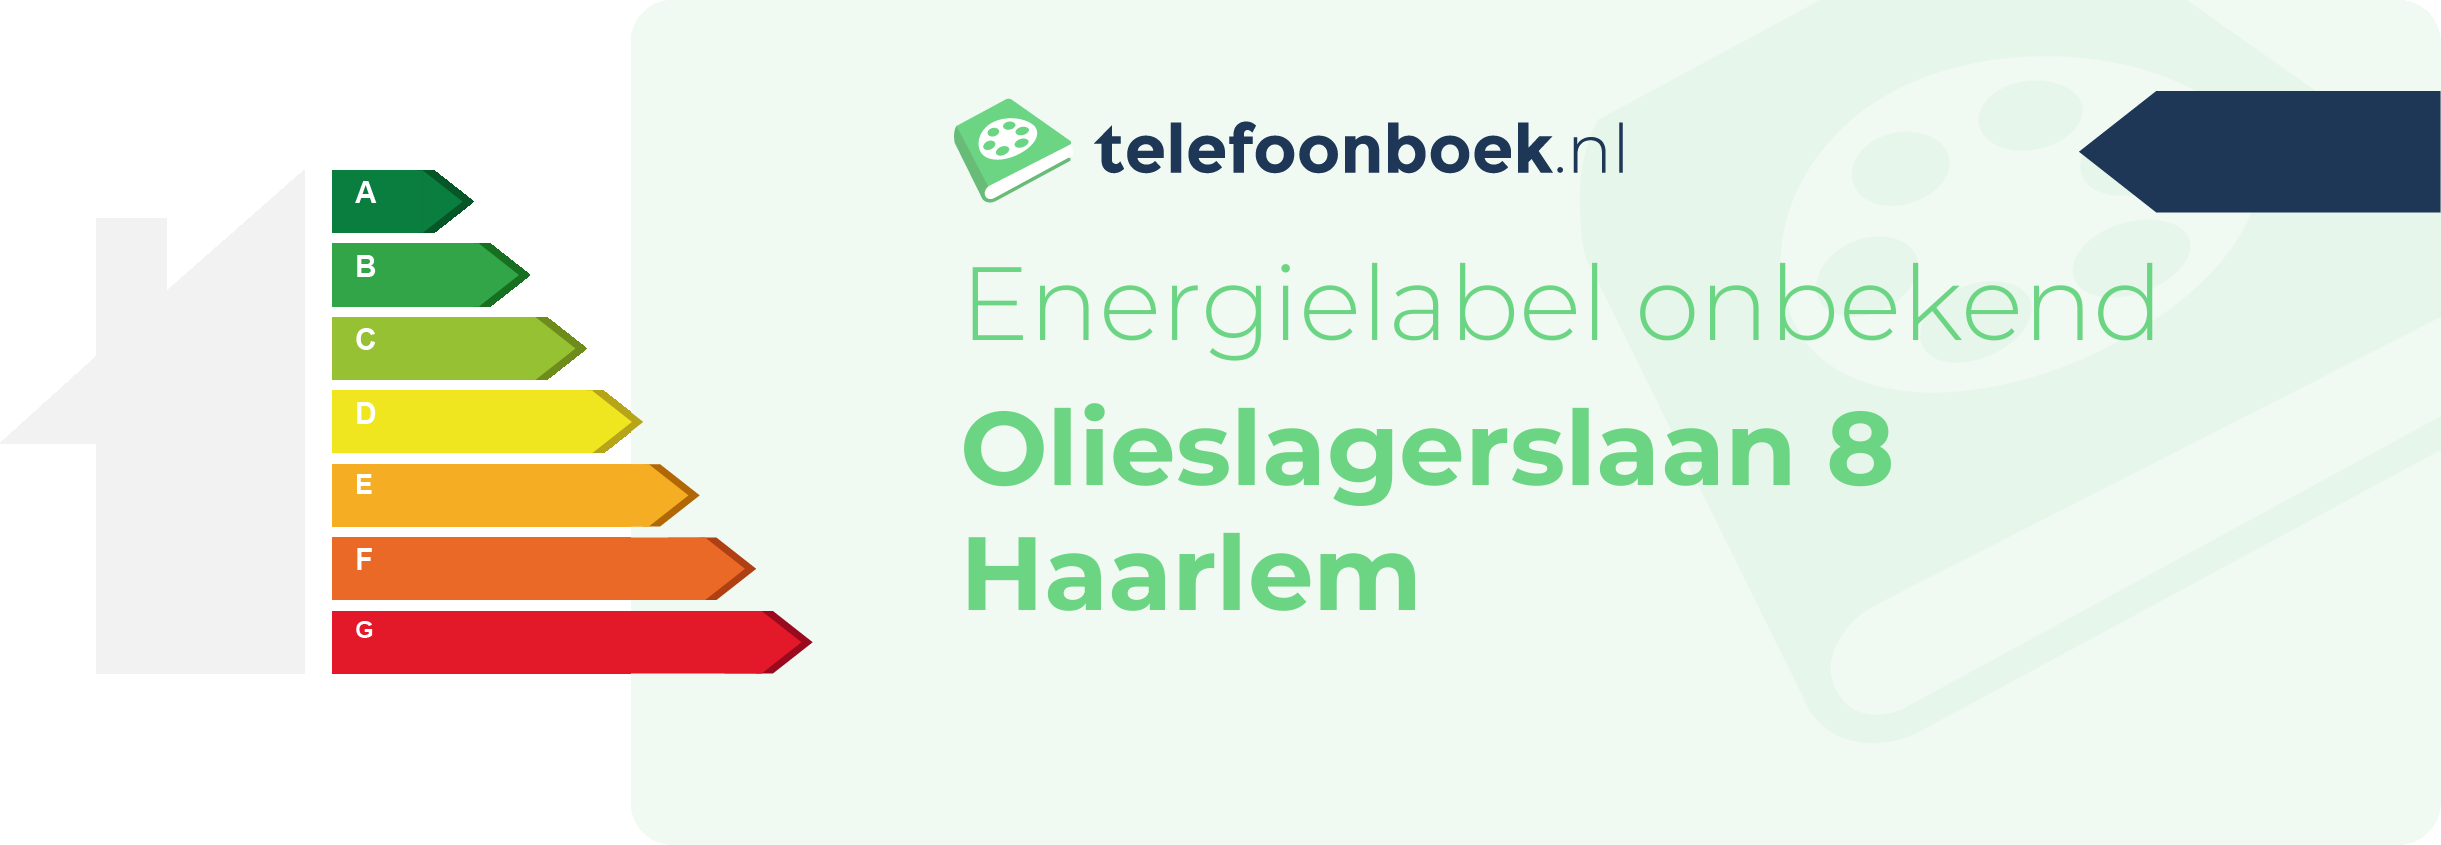 Energielabel Olieslagerslaan 8 Haarlem